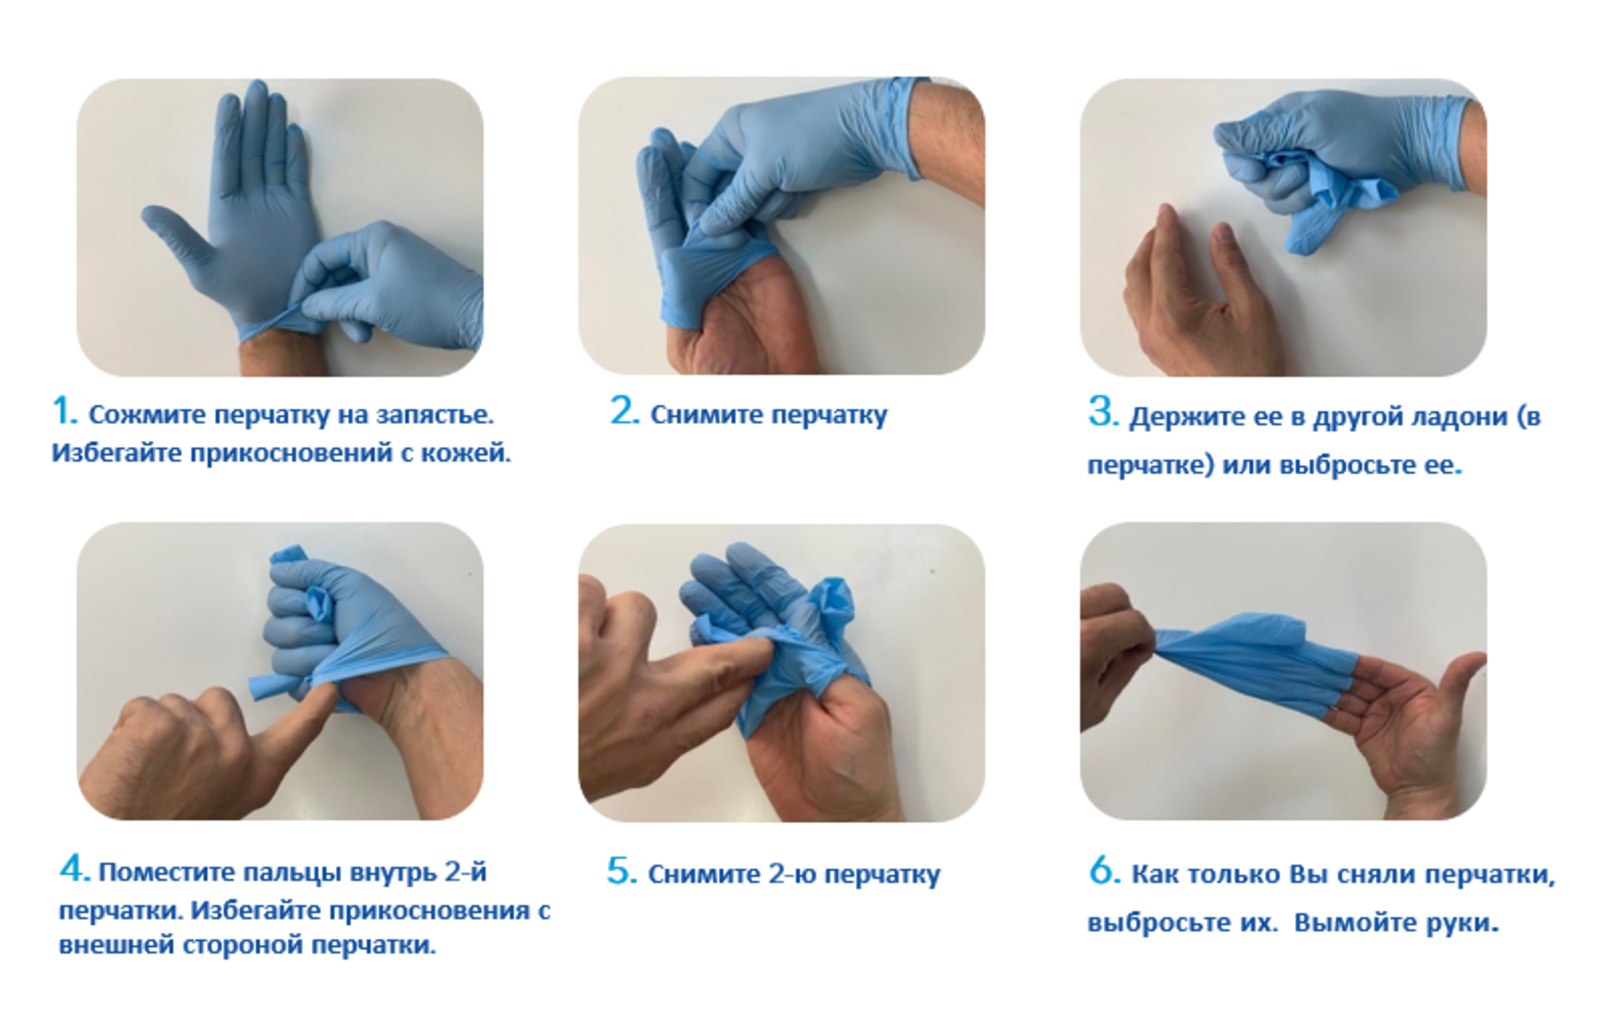 Техника надевания стерильных перчаток. Алгоритм одевания и снятия перчаток медицинских. Алгоритм снимания стерильных перчаток. Правила одевания стерильных перчаток. Надевать стерильные перчатки в случаях